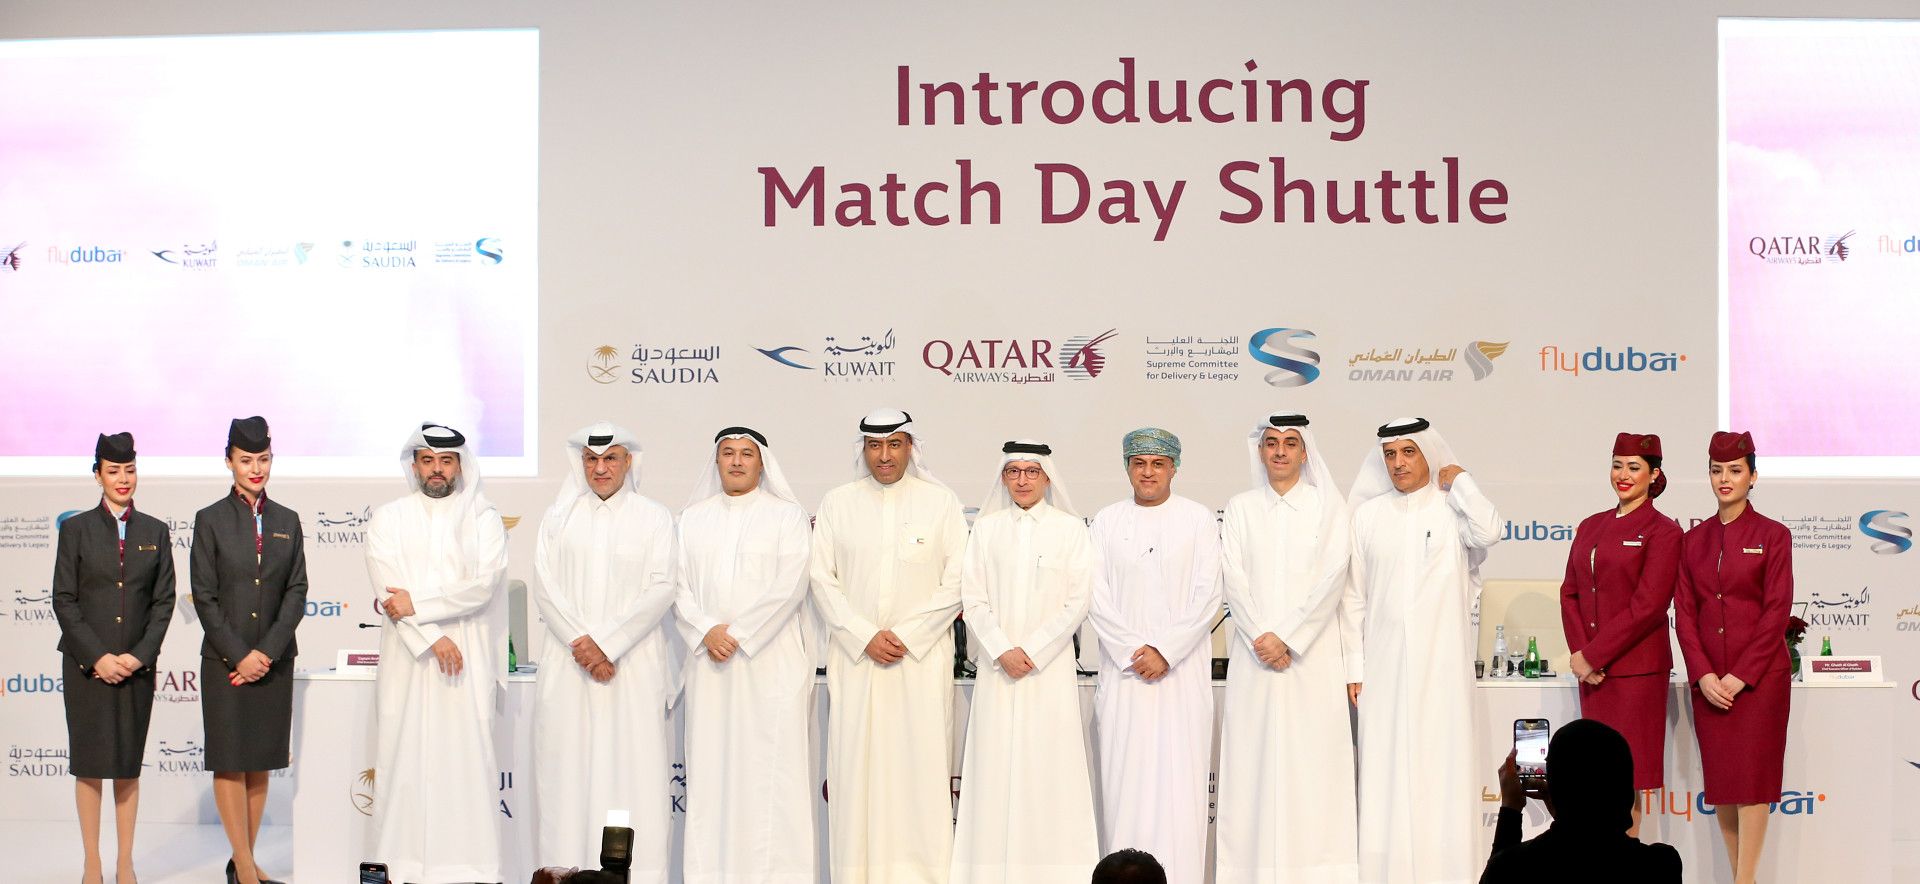 Qatar Match Day Shuttle (1)